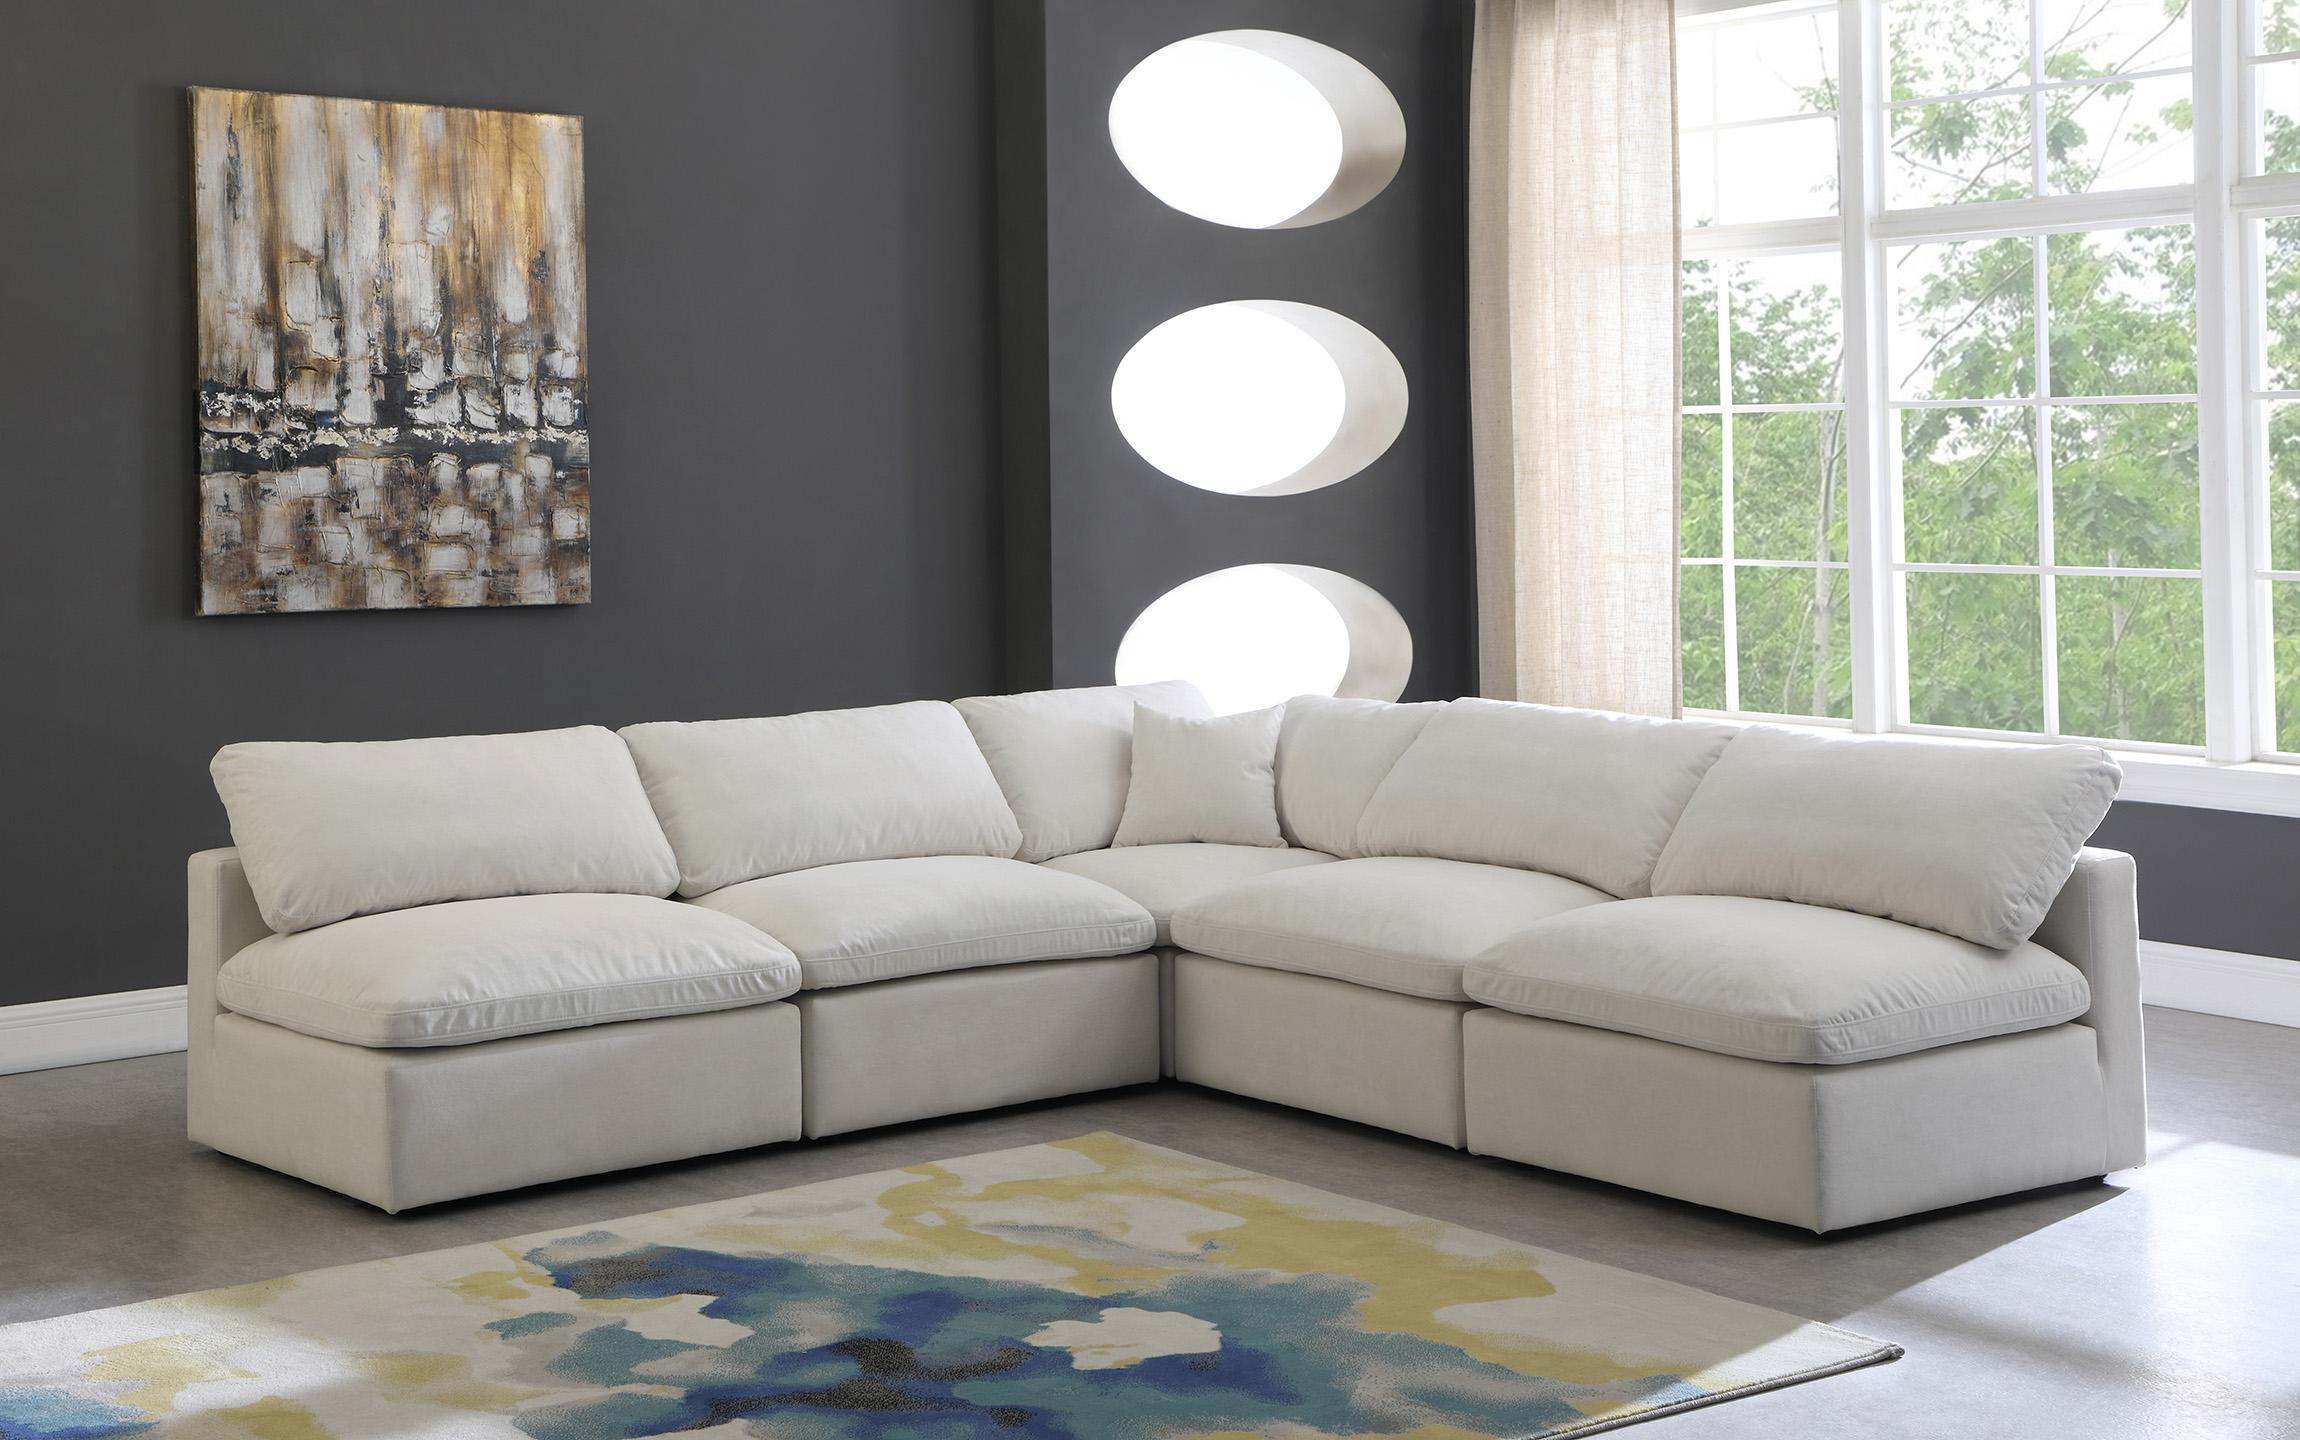 

    
Meridian Furniture 602Cream-Sec5B Modular Sectional Sofa Cream 602Cream-Sec5B
